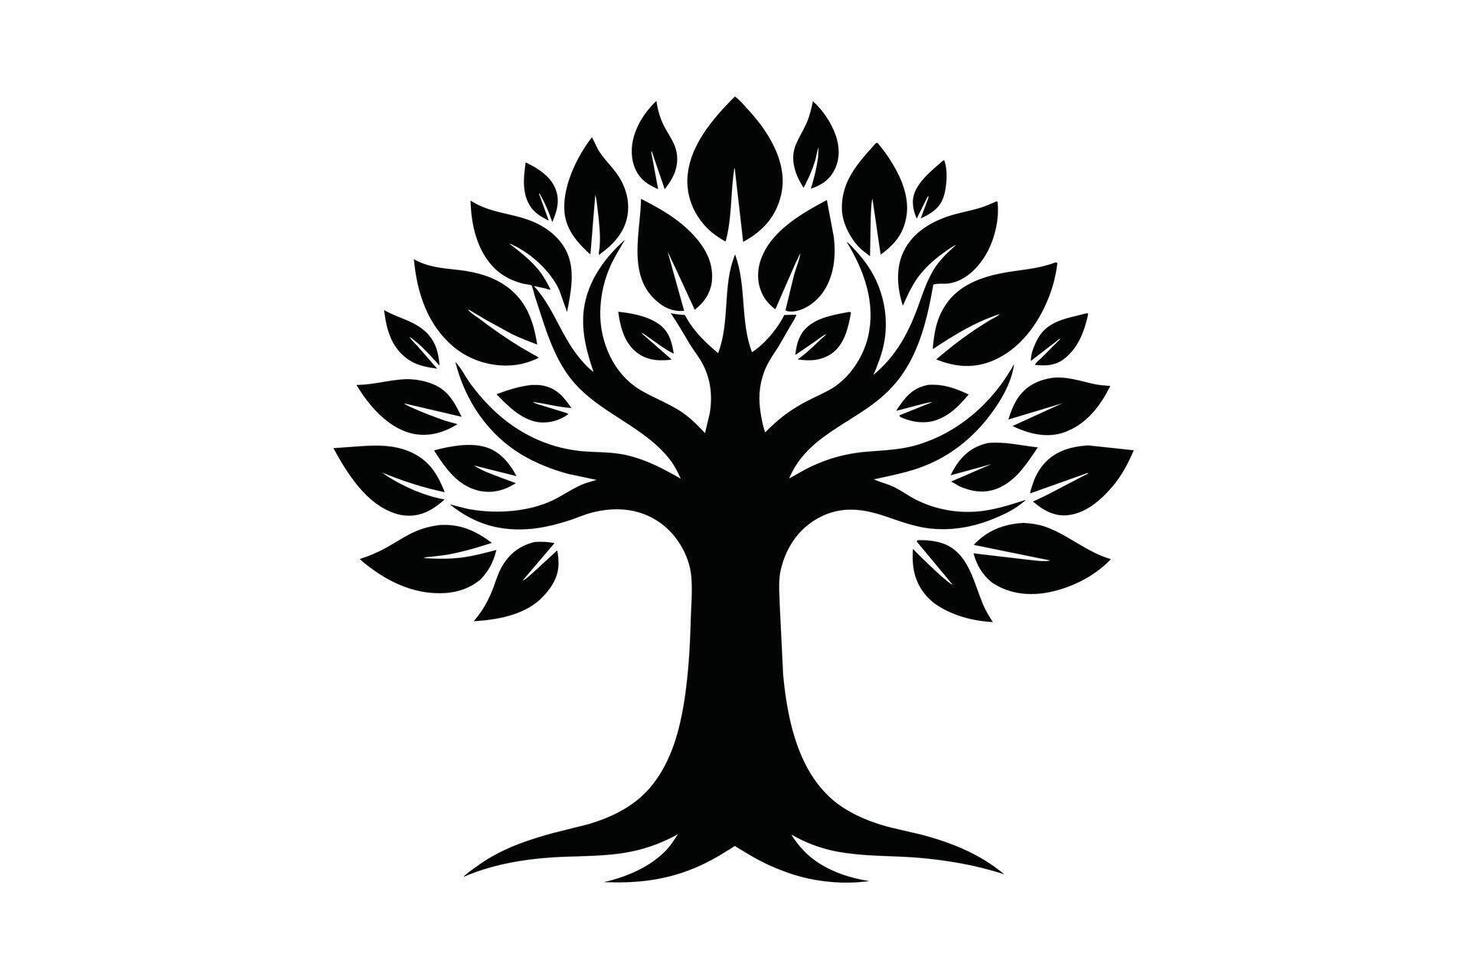 schwarz Bäume Logo Vektor Sammlung Vektor isoliert auf Weiß Hintergrund